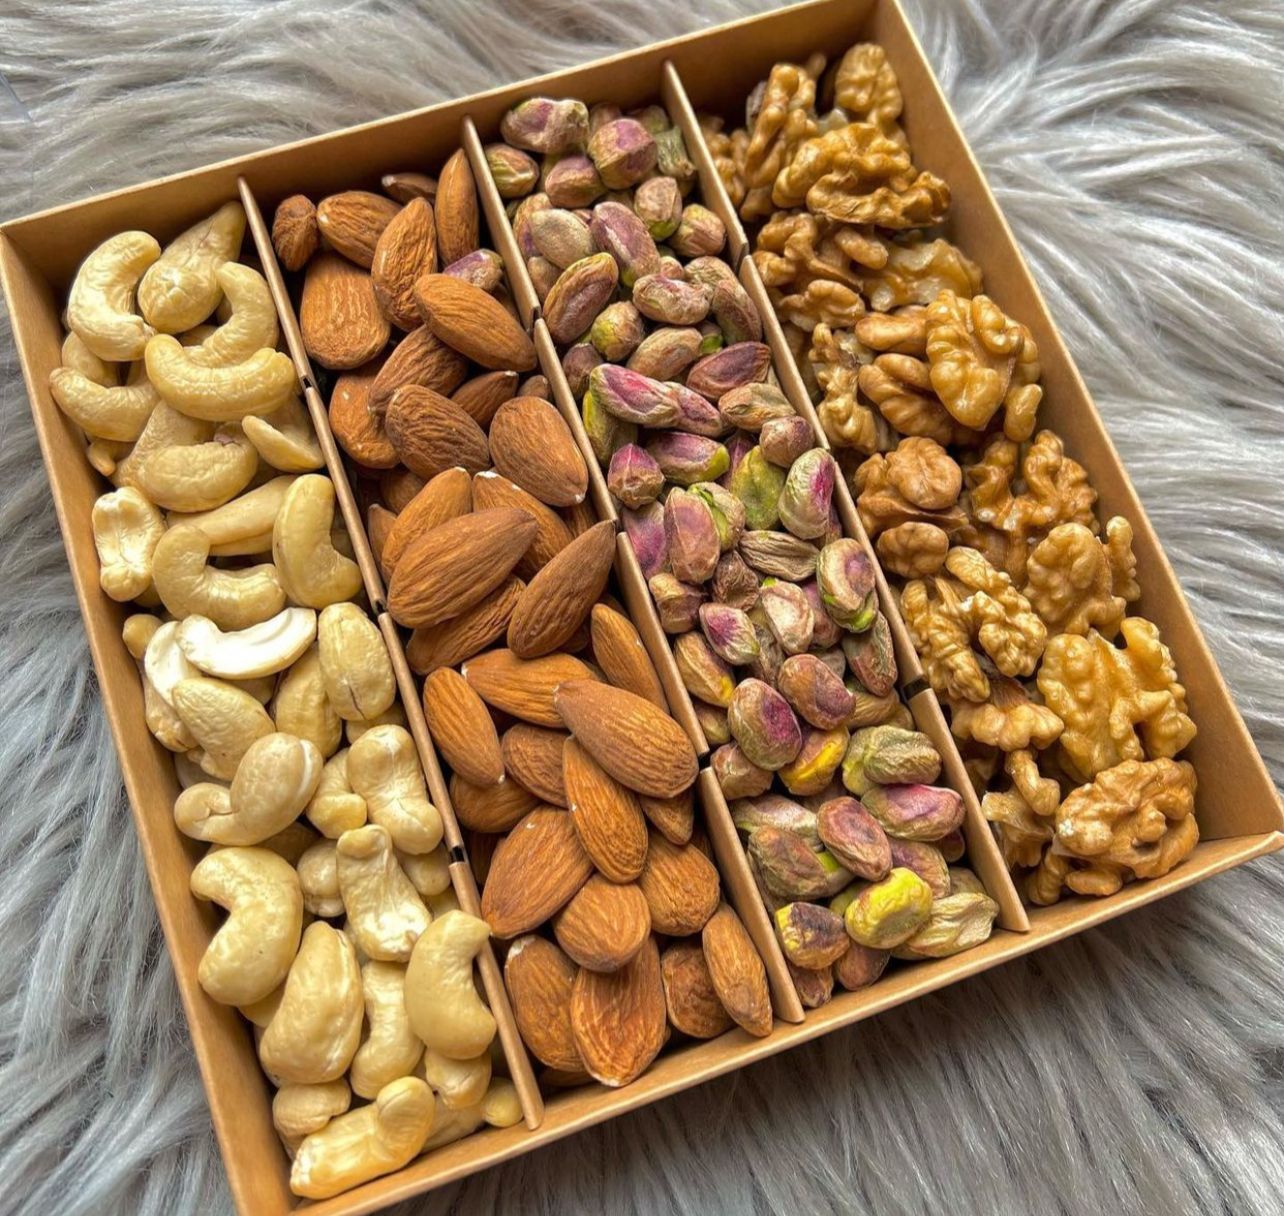 Mixed Nuts Box